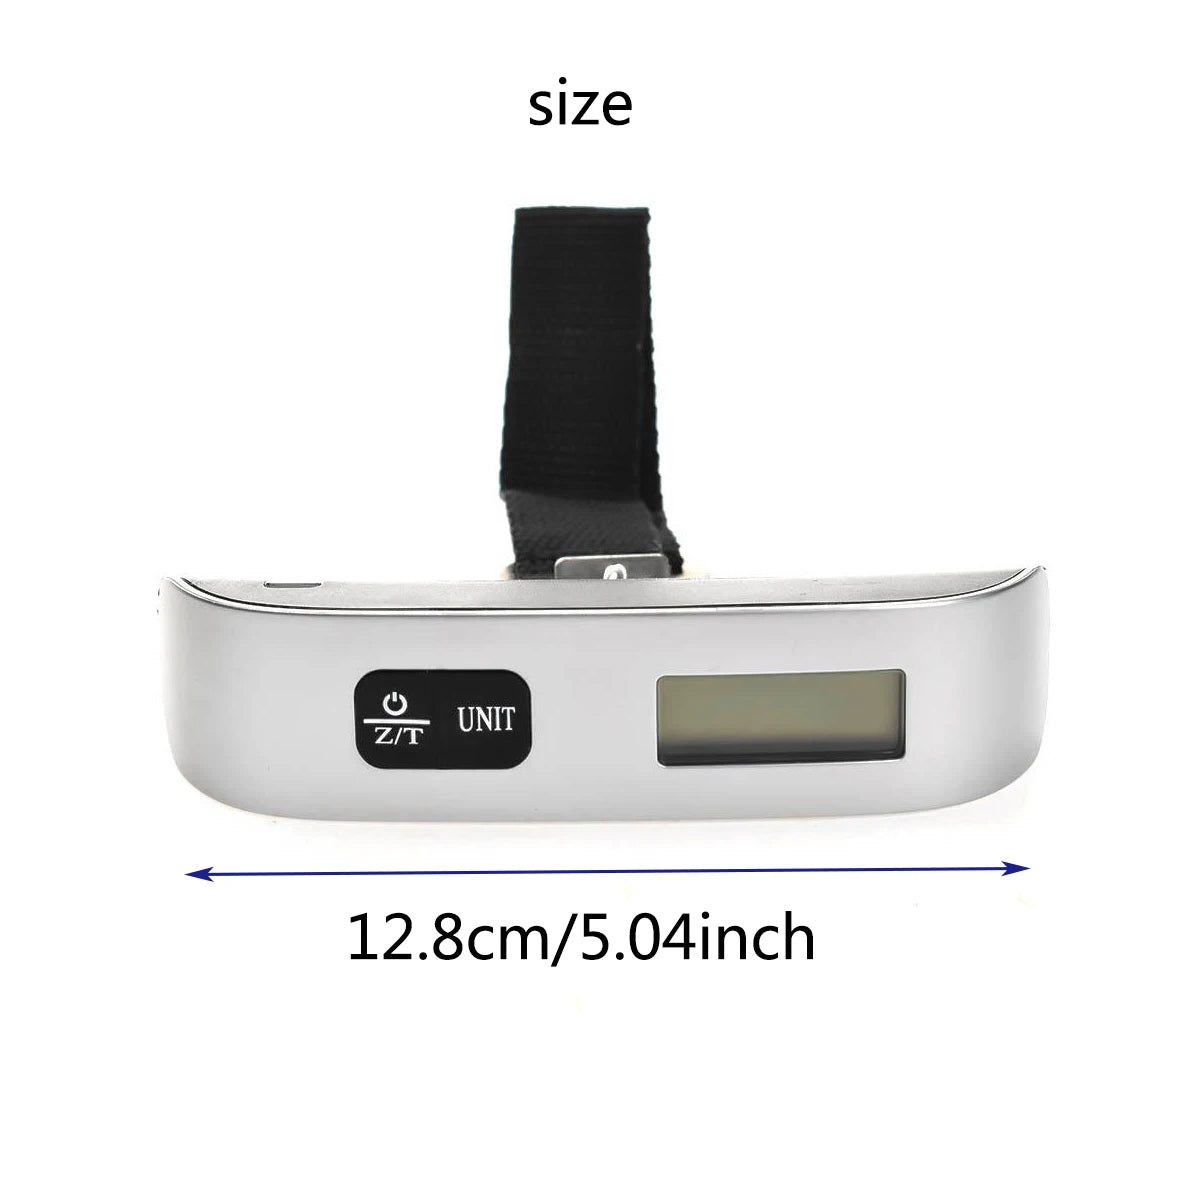 Digital Luggage Scale - 50kg/110lb